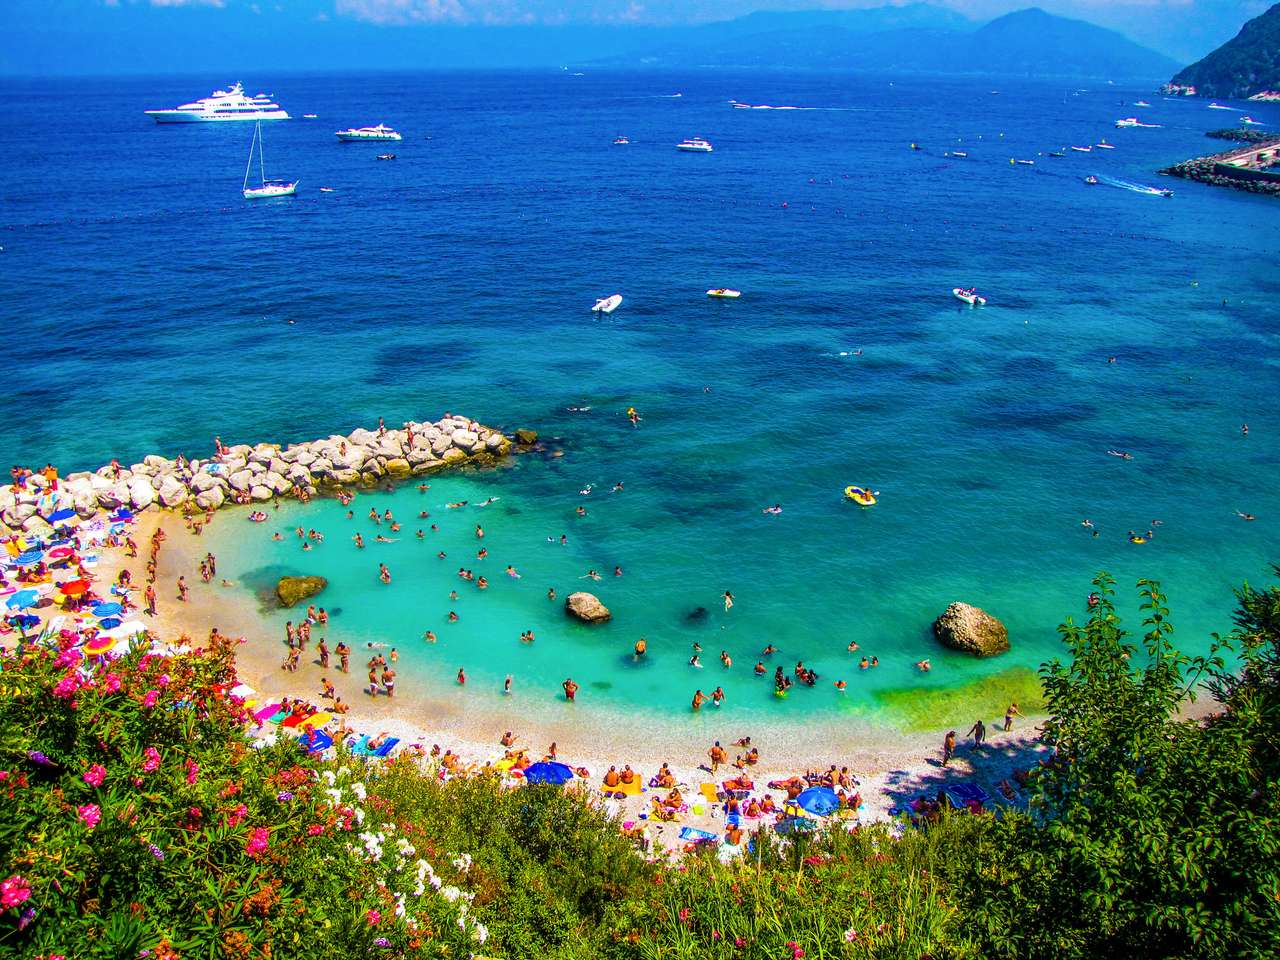 Многолюдный пляж на Капри, Италия пазл онлайн